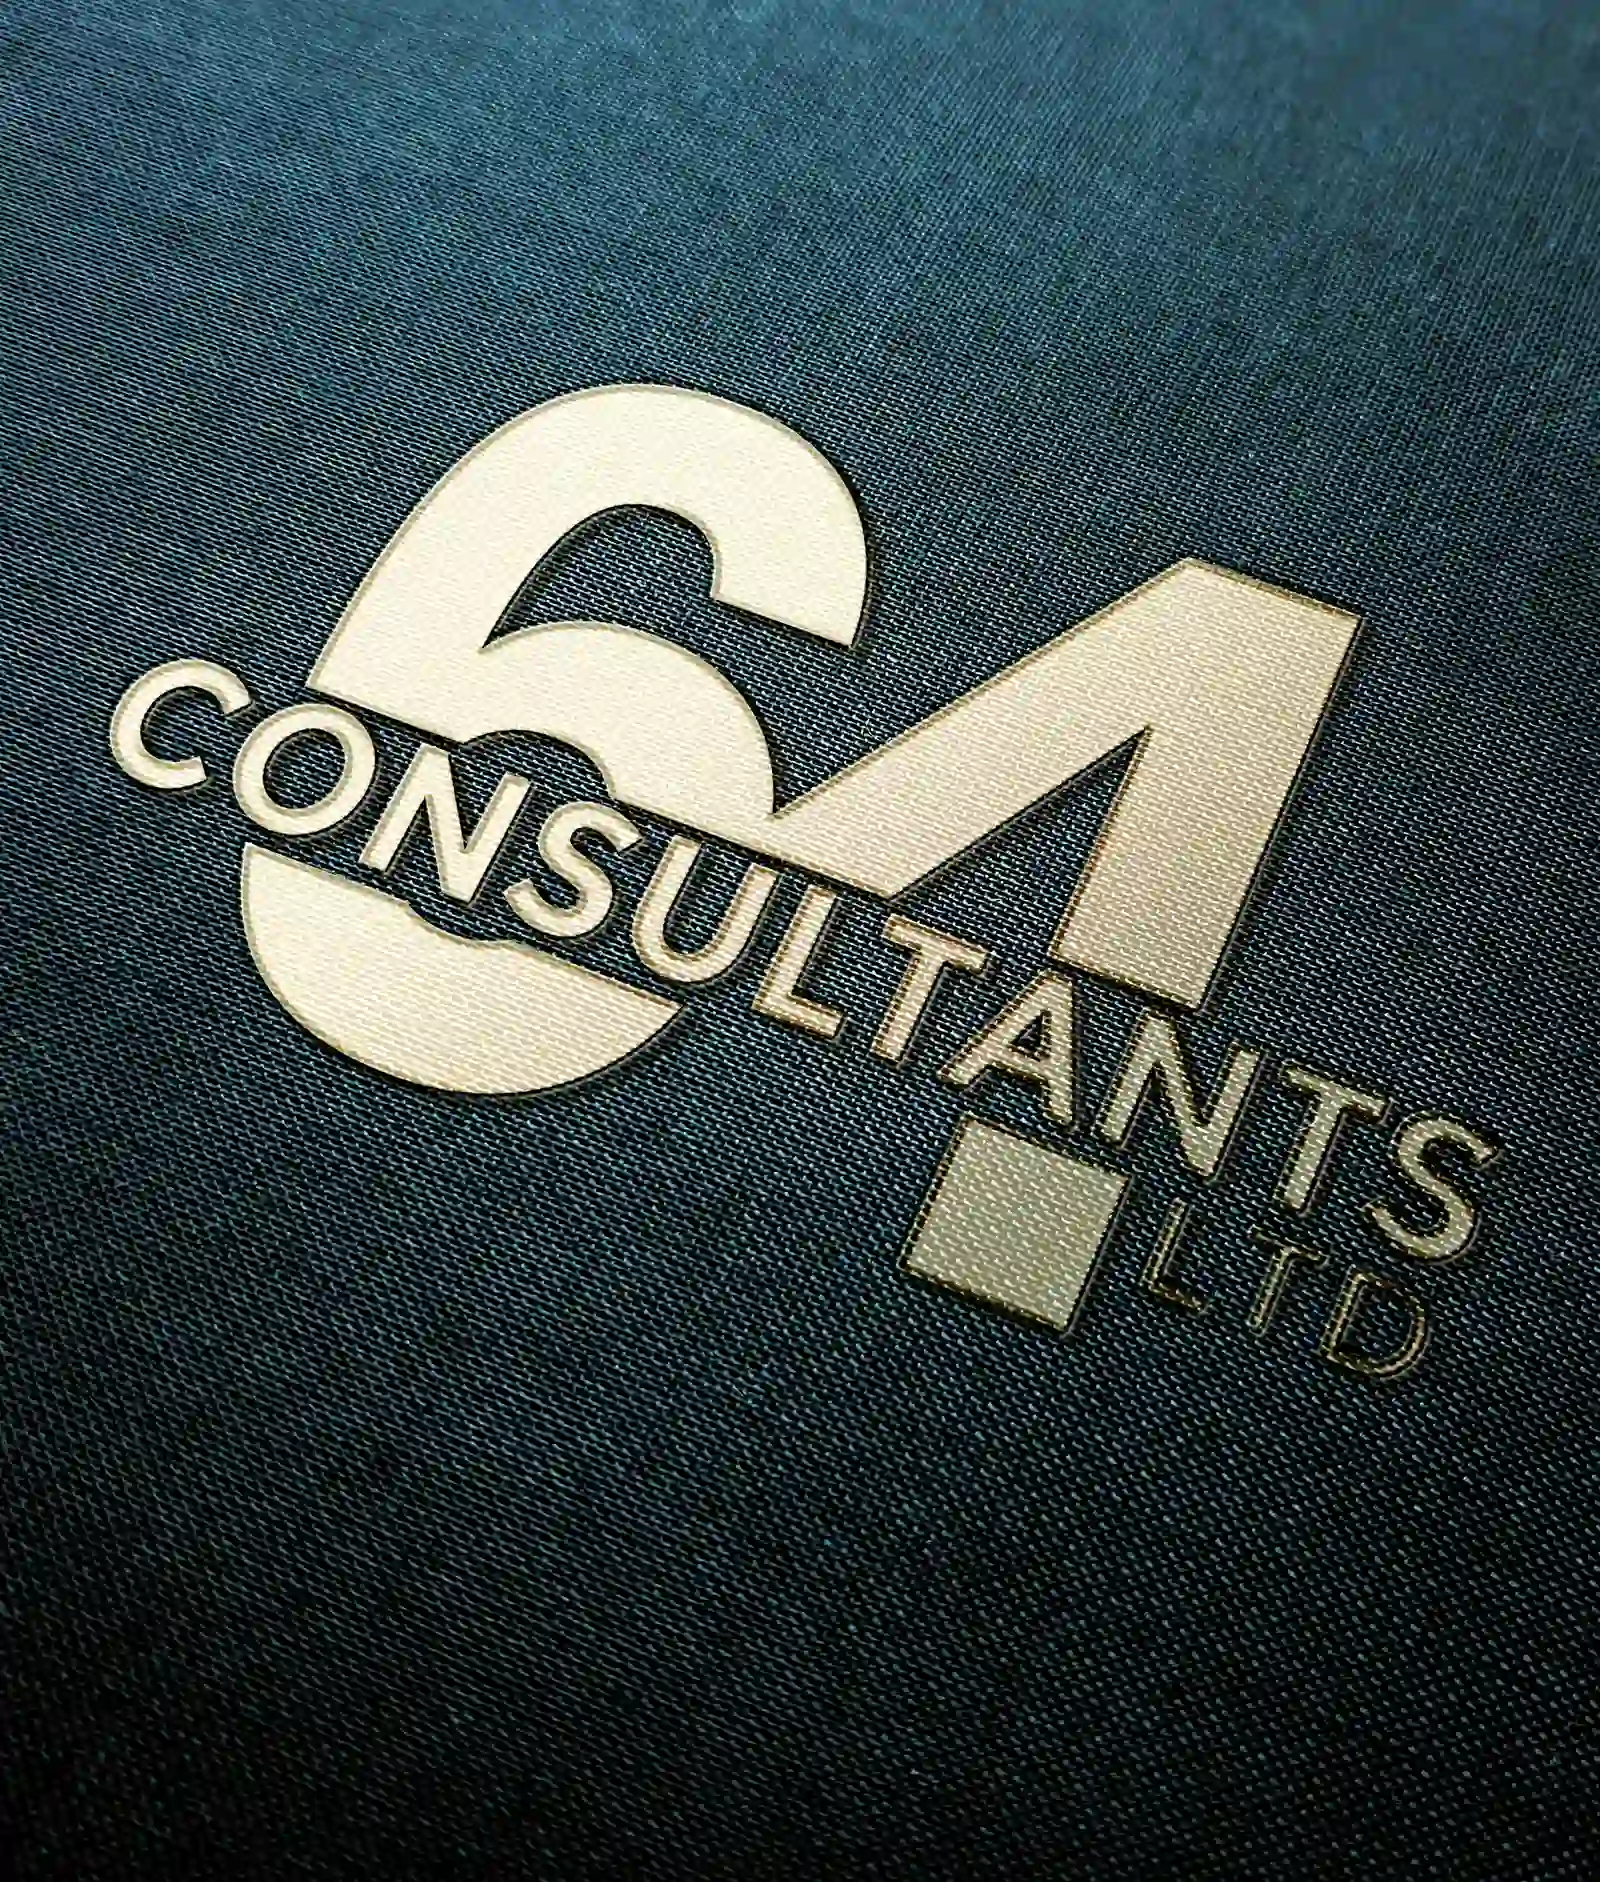 64 Consultant LTD